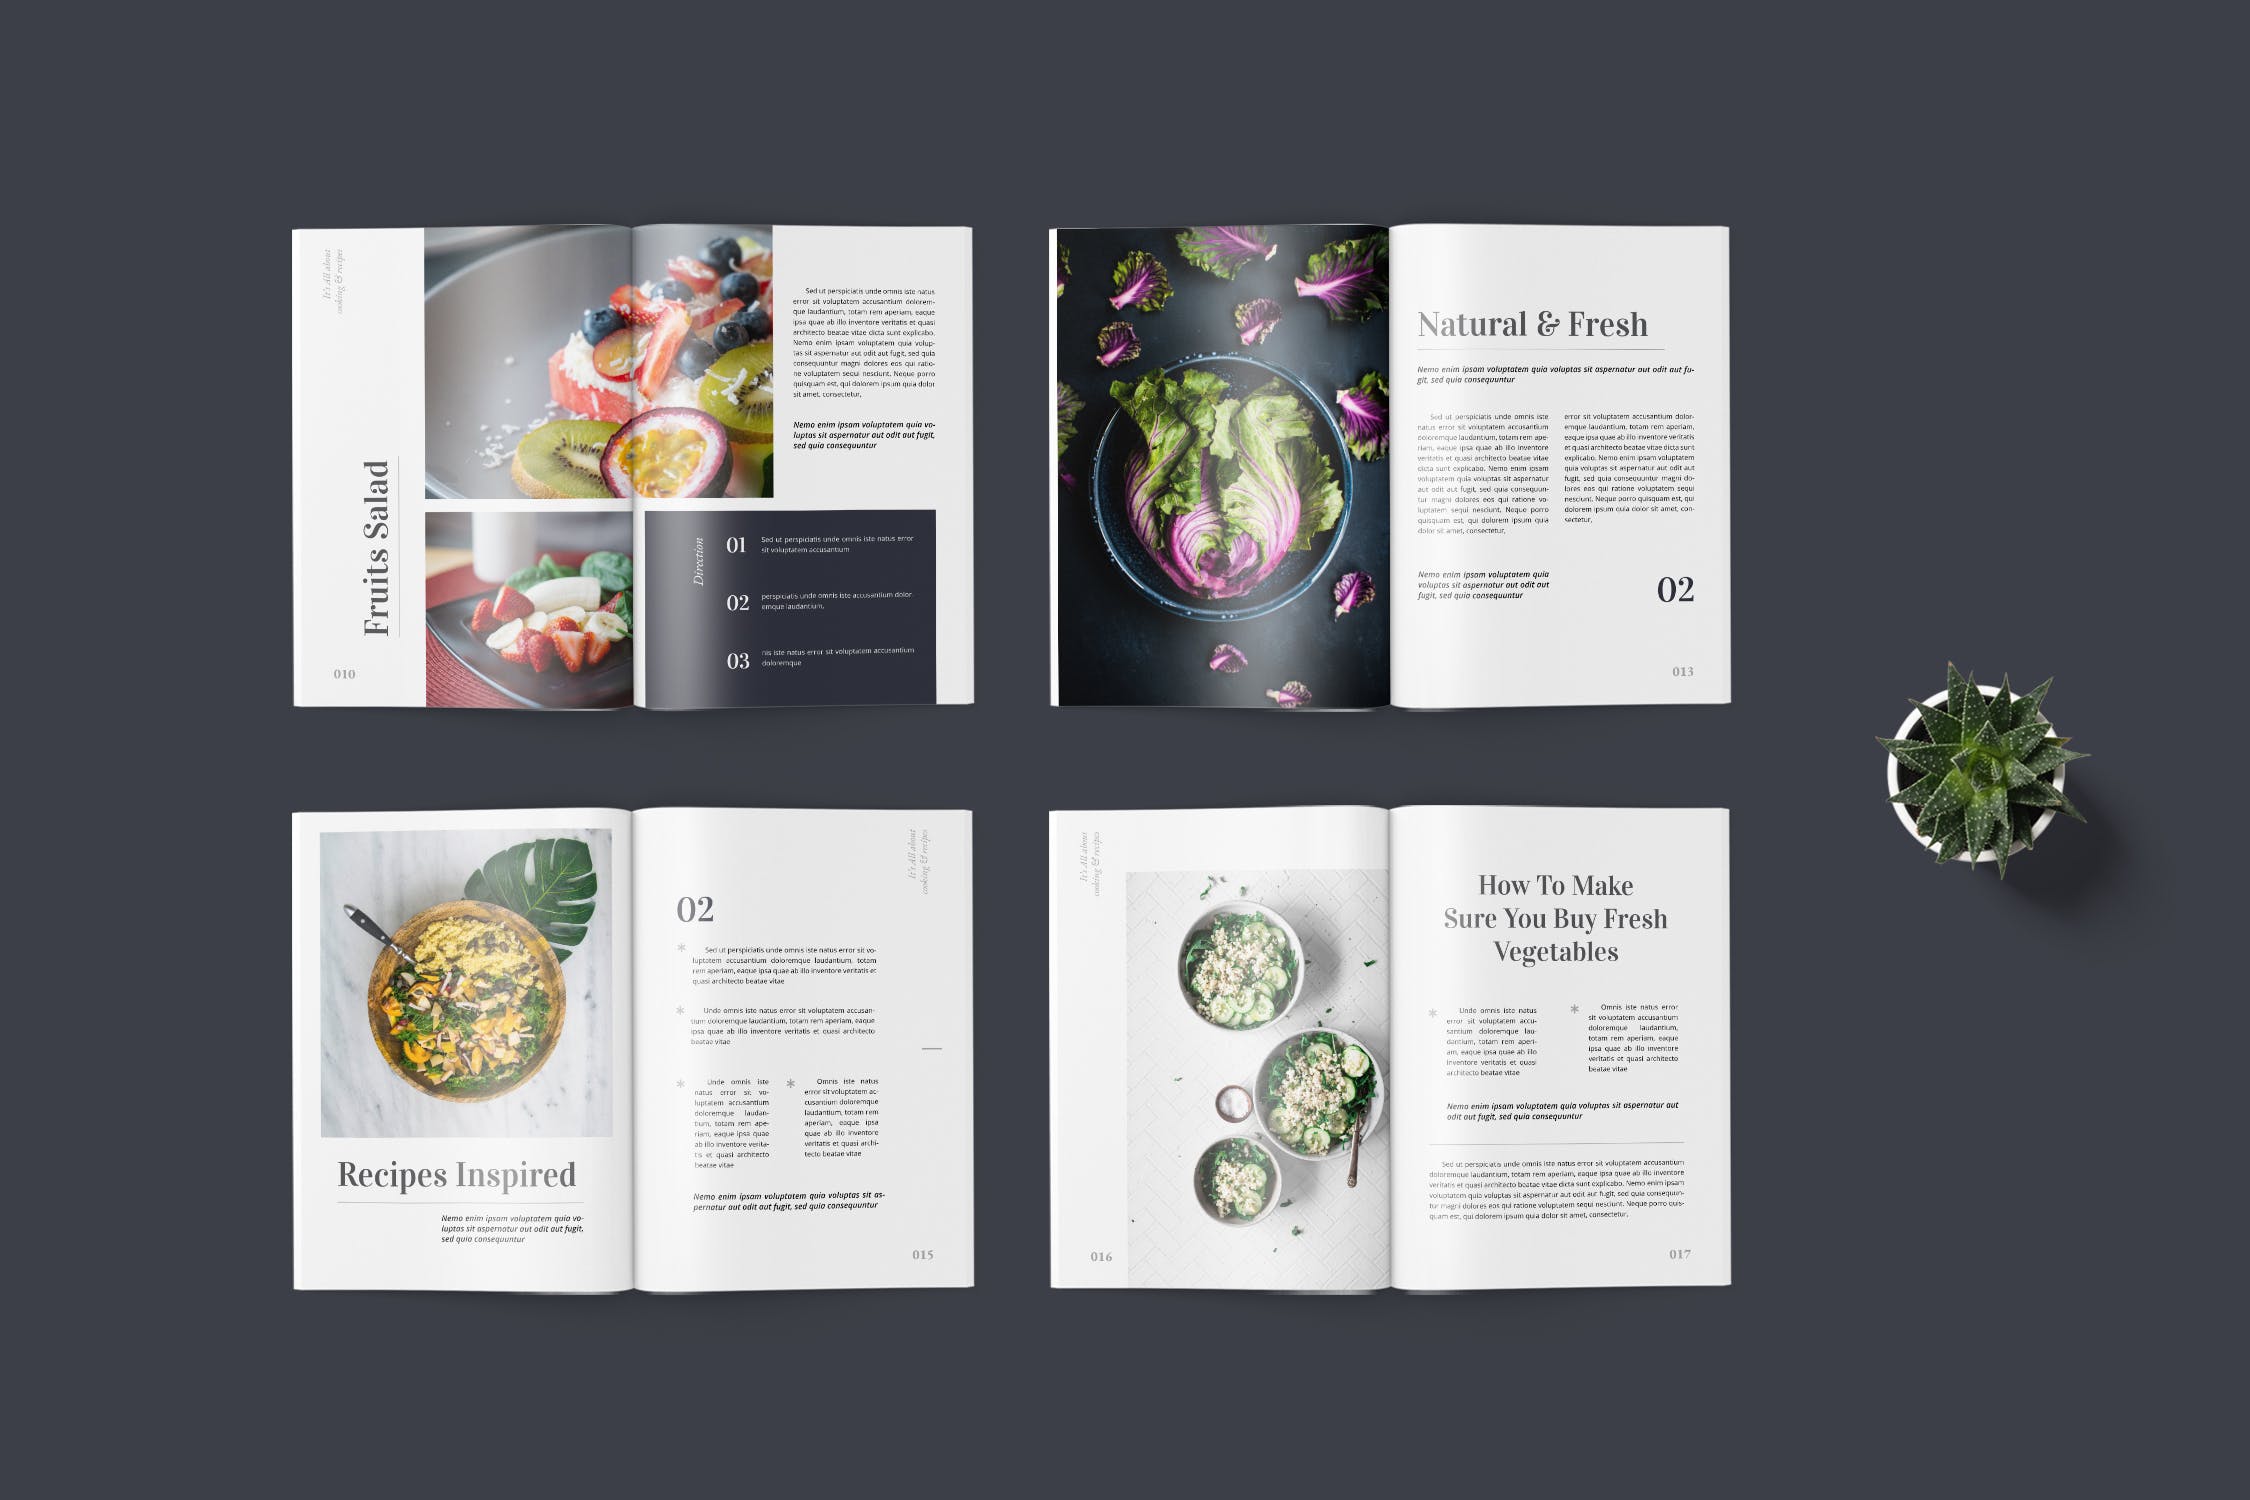 高端美食杂志排版设计模板 Food Magazine Template插图(4)